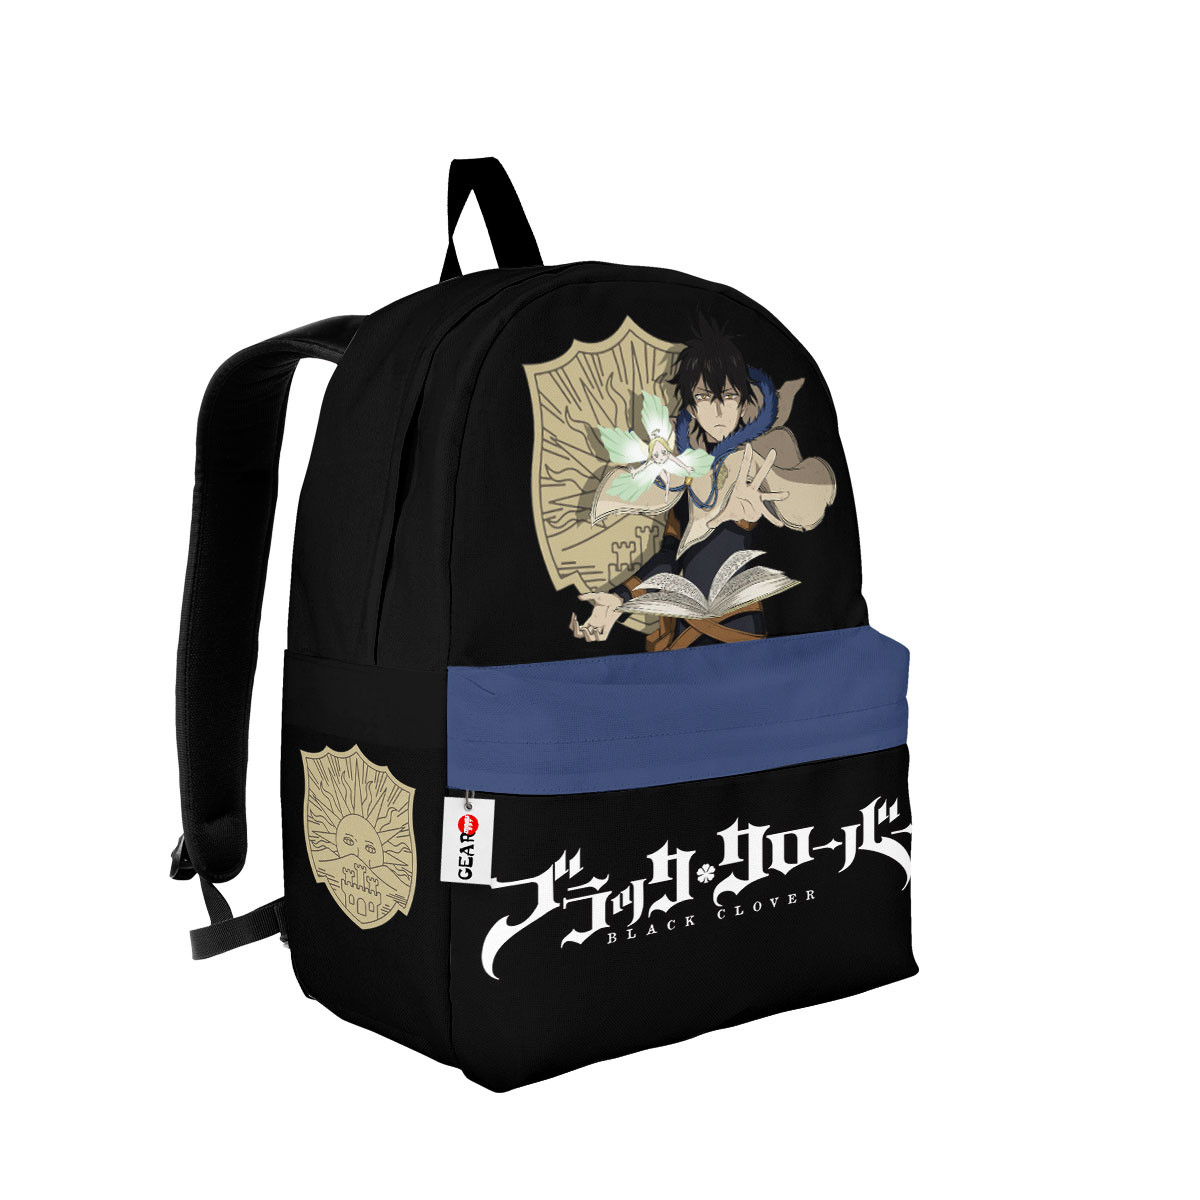 BEST Yuno Grinberryall Black Clover Anime Backpack Bag2